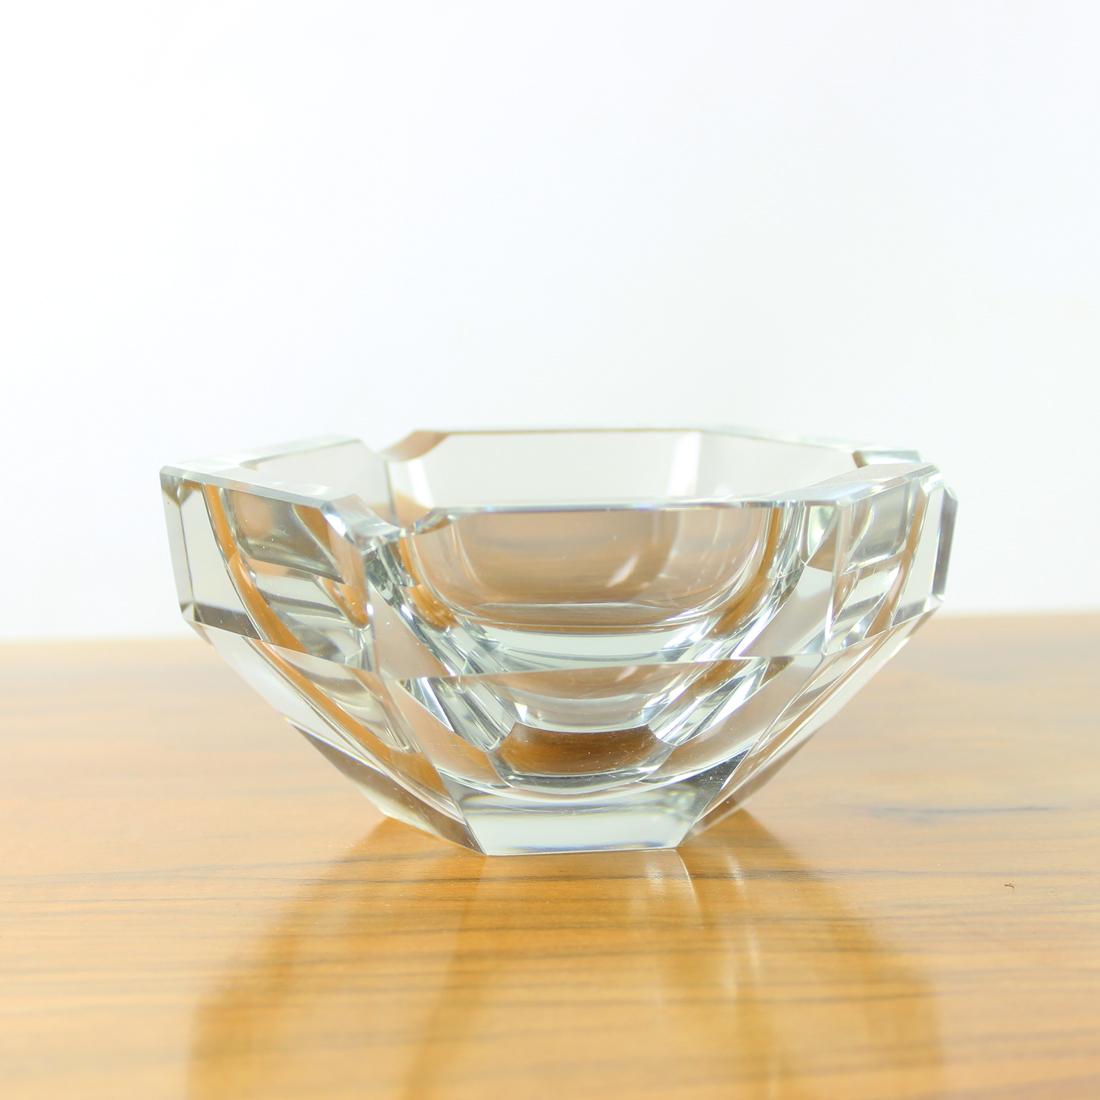 Magnifique cendrier vintage produit en Tchécoslovaquie dans les années 1950. Fabriqué en verre transparent pur en forme de diamant. Bel objet qui peut être utilisé comme porte-clés. Il est magnifique en soi. Pas de dommages ou d'éclats sur le verre.